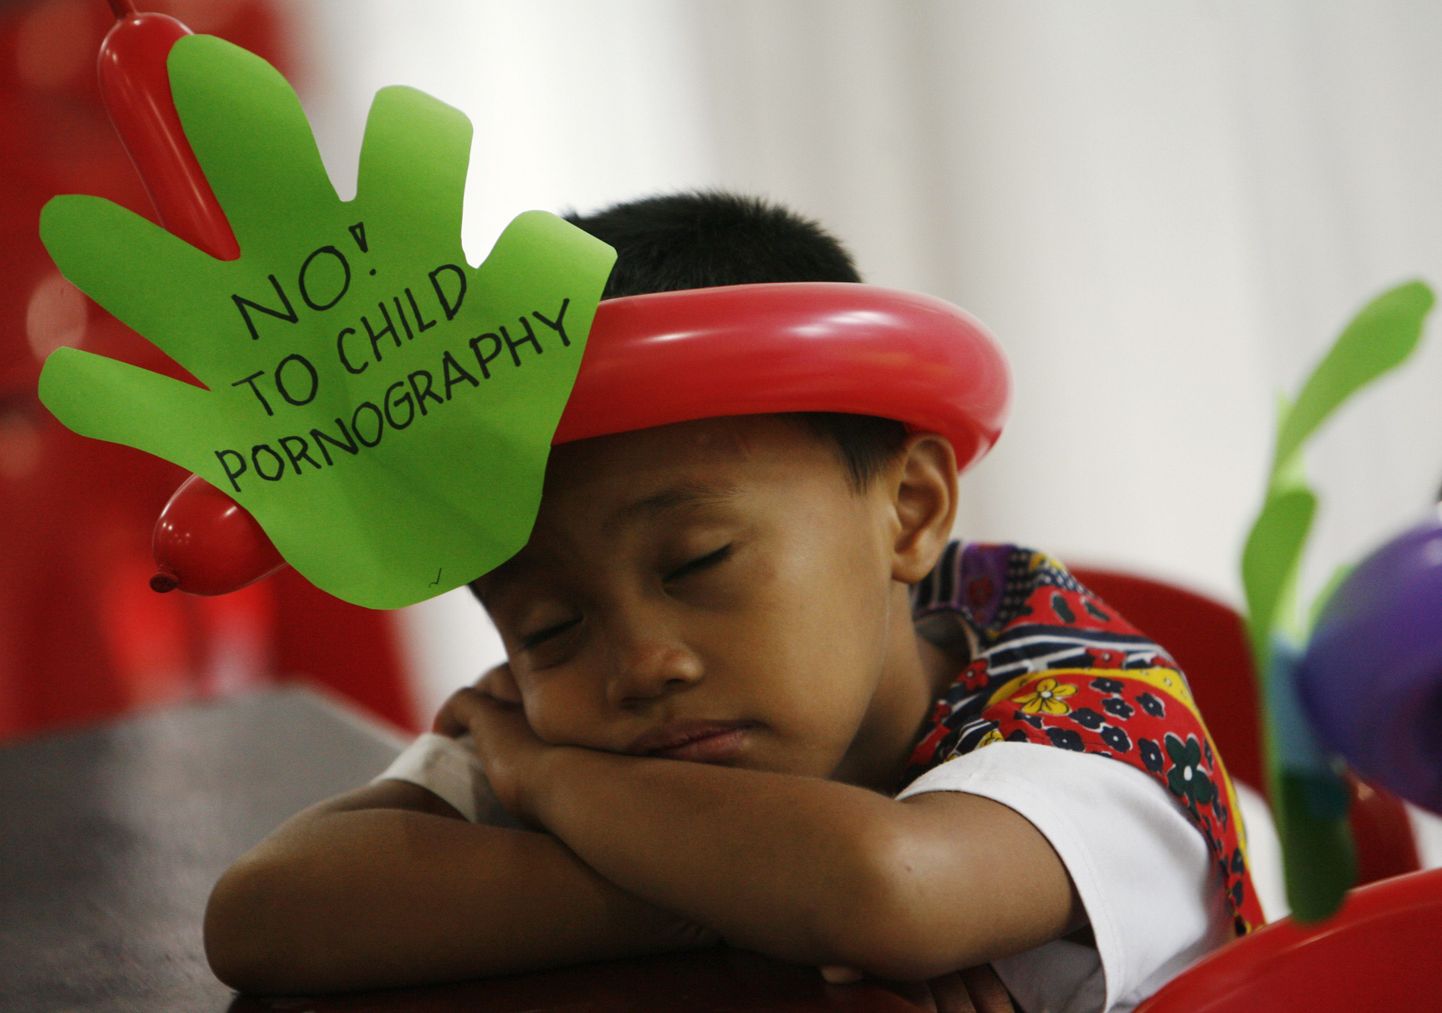 «Ei lapspornole!» teatab see kiri filipiini poisi peas.